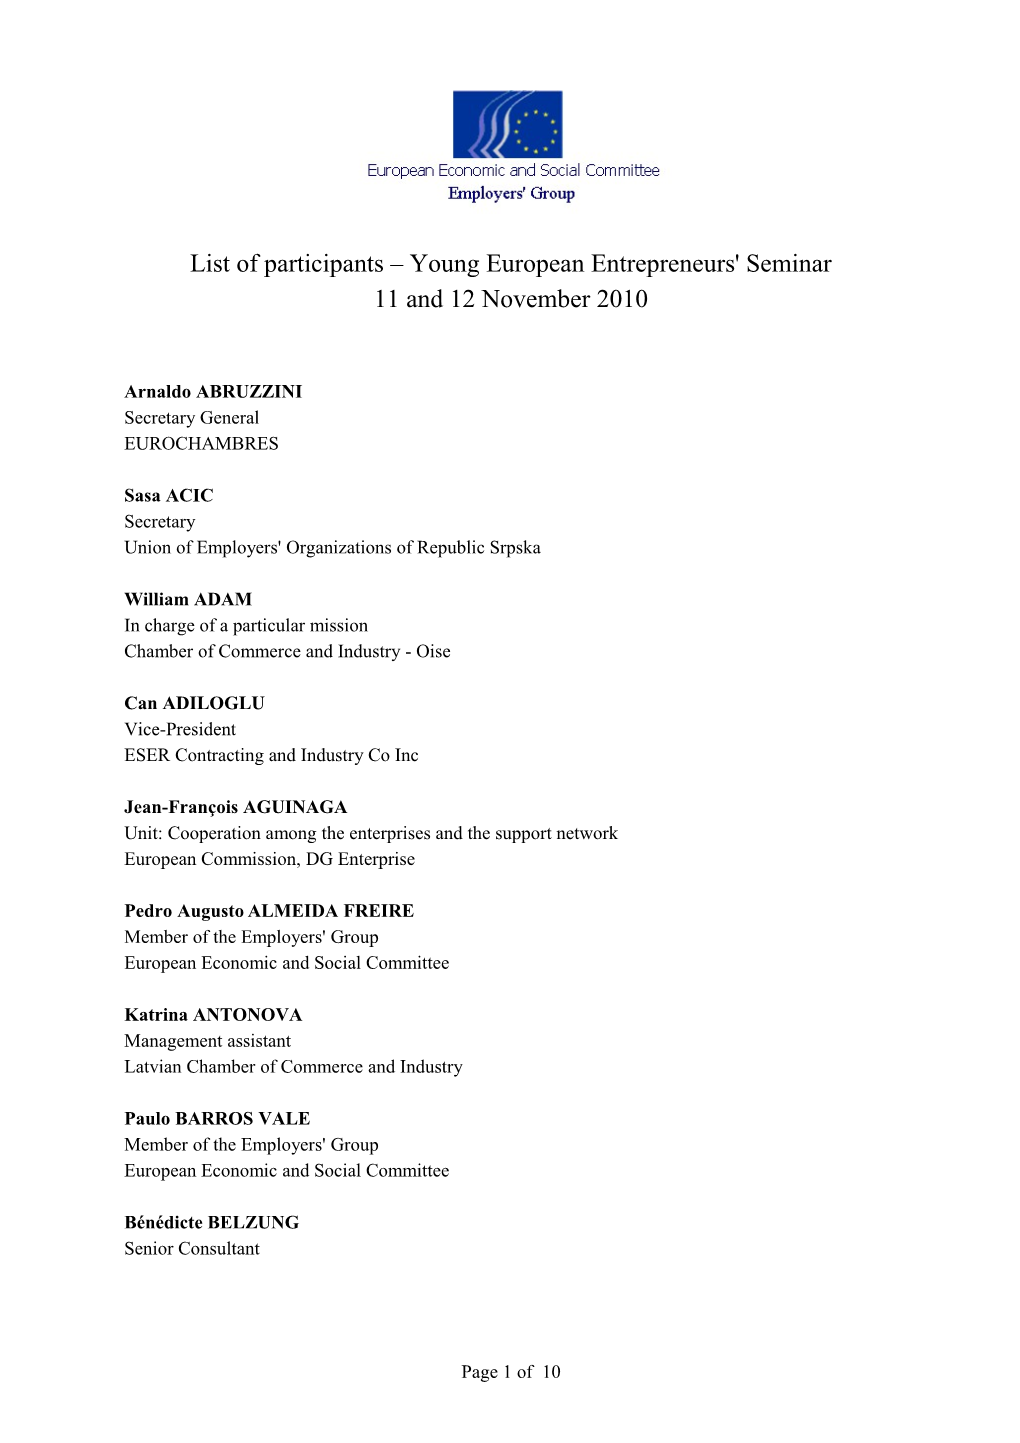 List of Participants Young European Entrepreneurs' Seminar